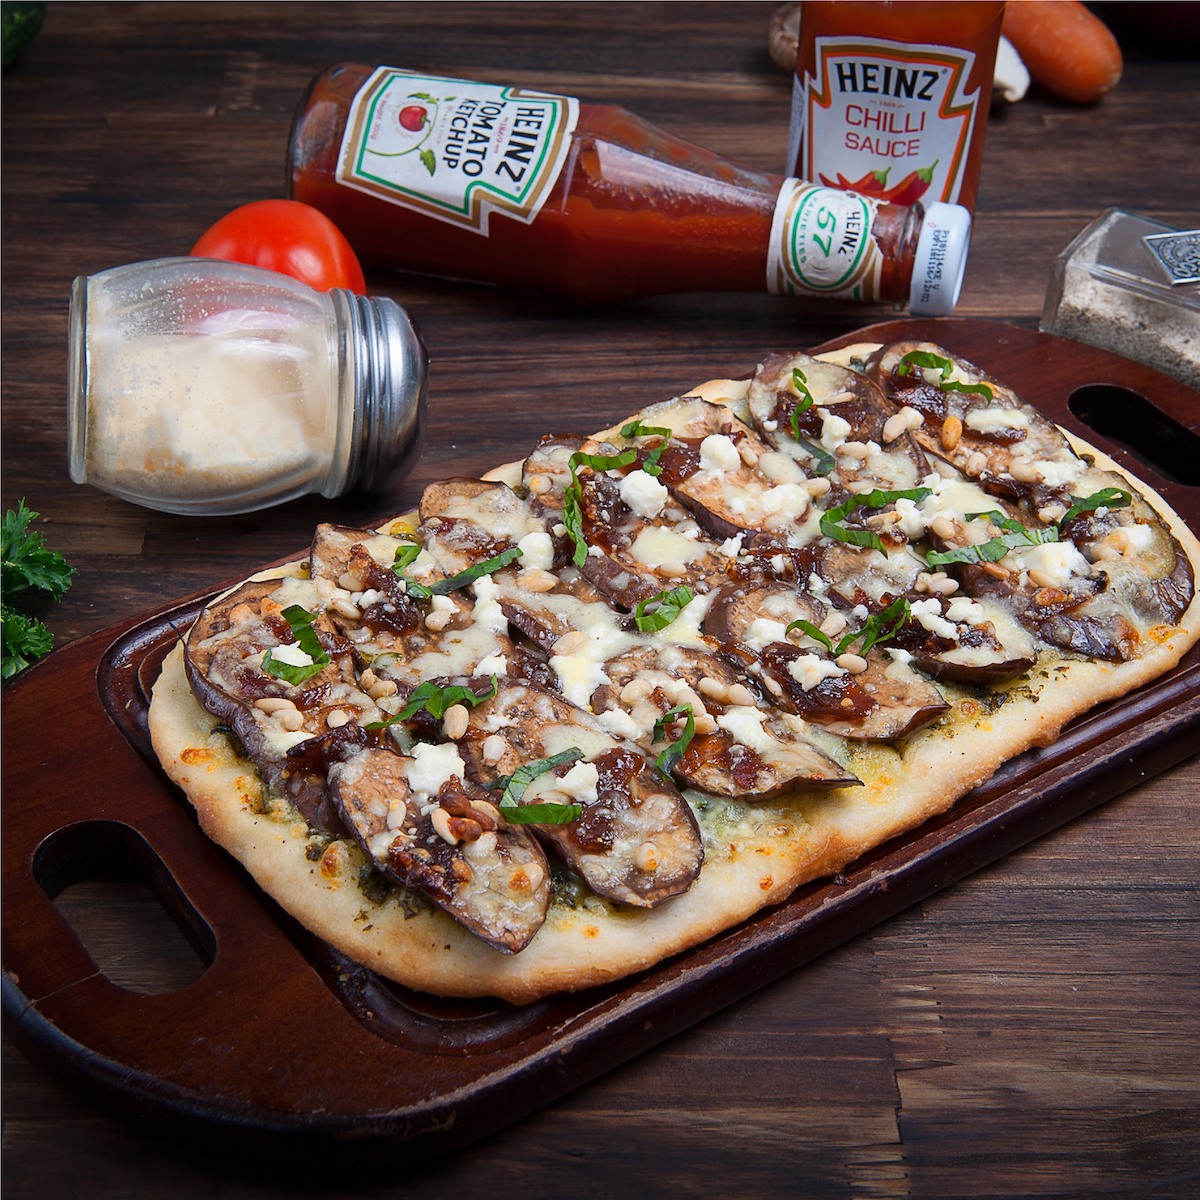 Zpizza – Hệ thống chuỗi nhà hàng Pizza ‘chuẩn Ý’